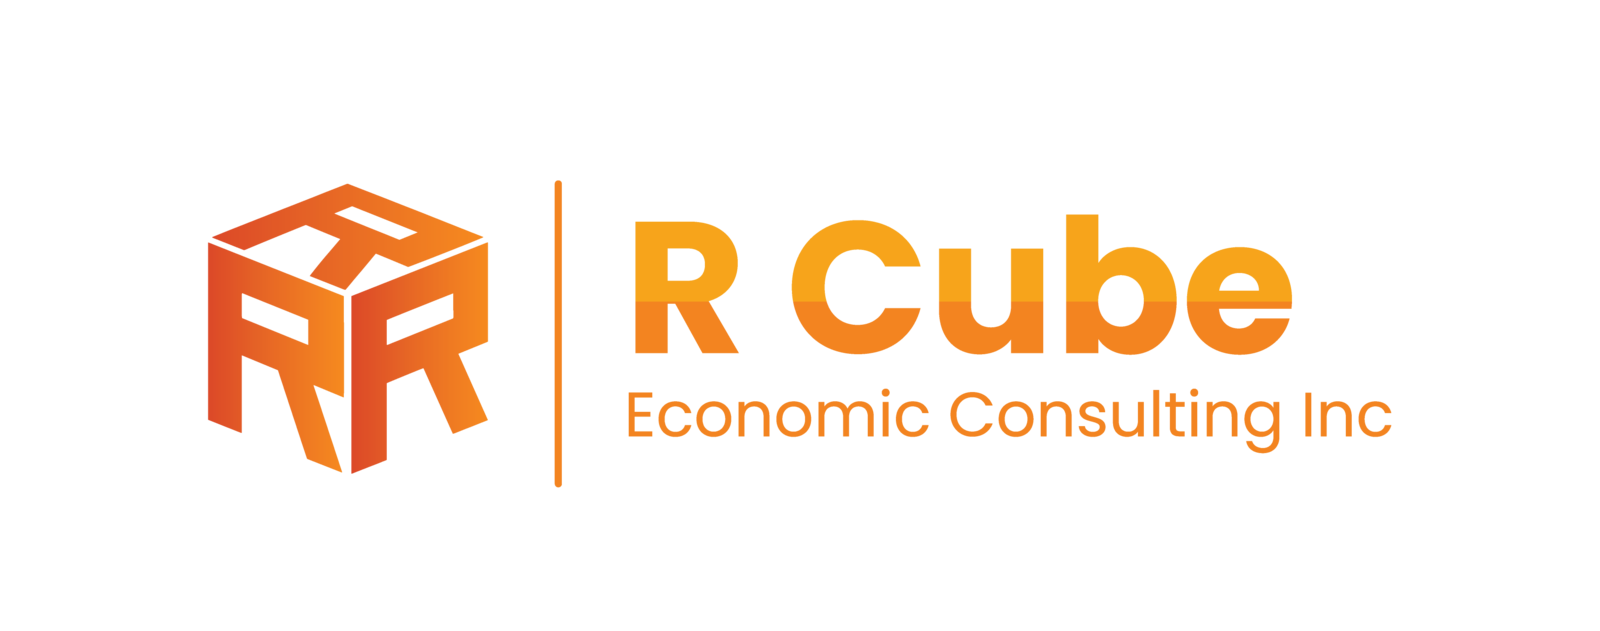 R Cube Economic Consulting Inc.